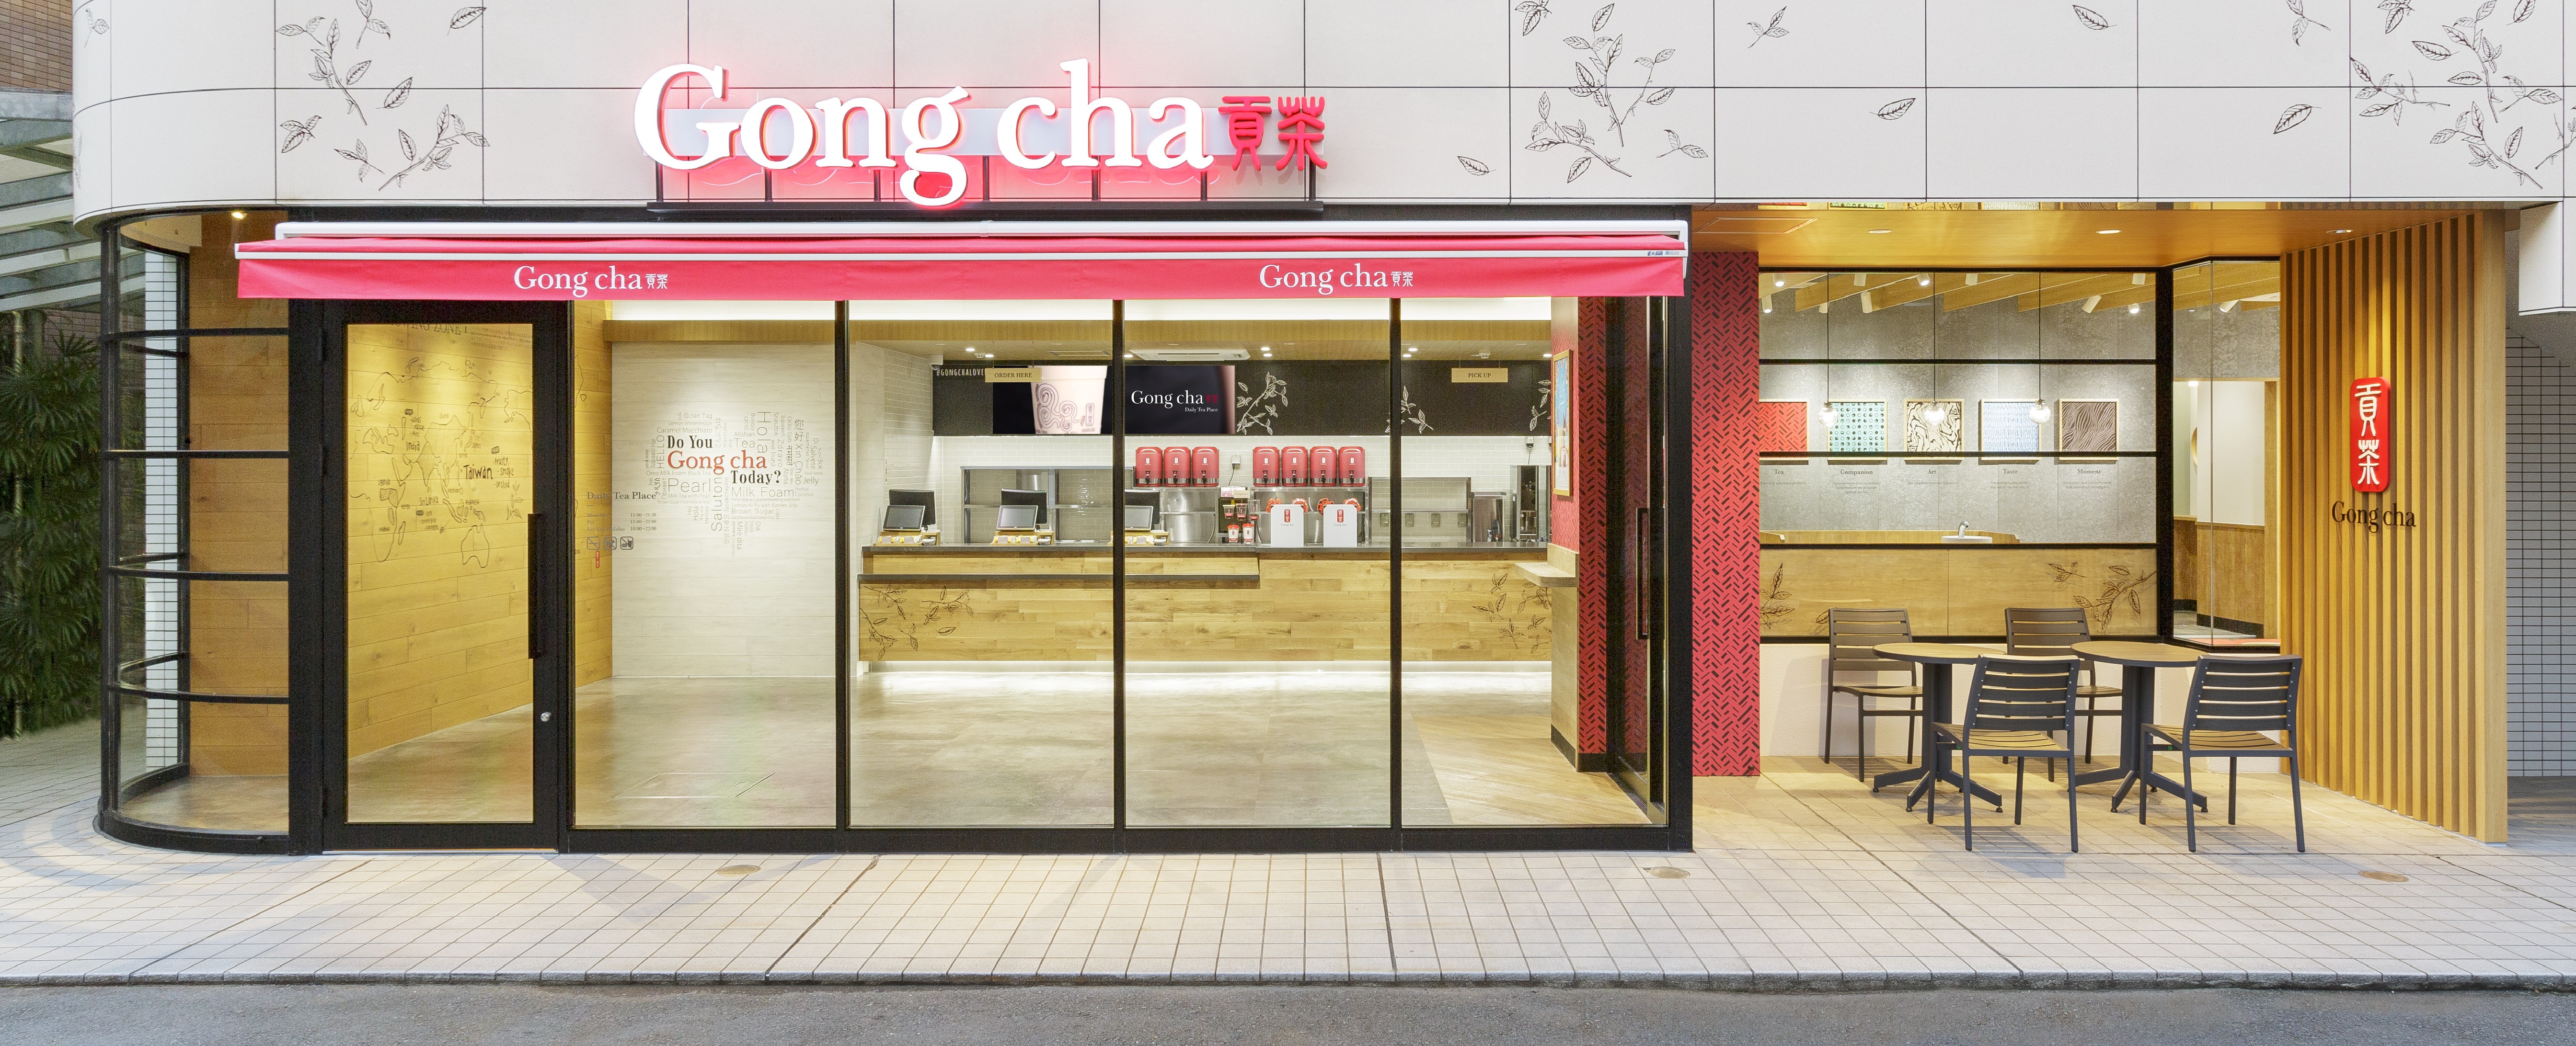 この秋、ゴンチャの新シリーズ発売！デザートのような味わい「Gong cha Tea Dessert」 第一弾は ”クレームブリュレ”のサブ画像10